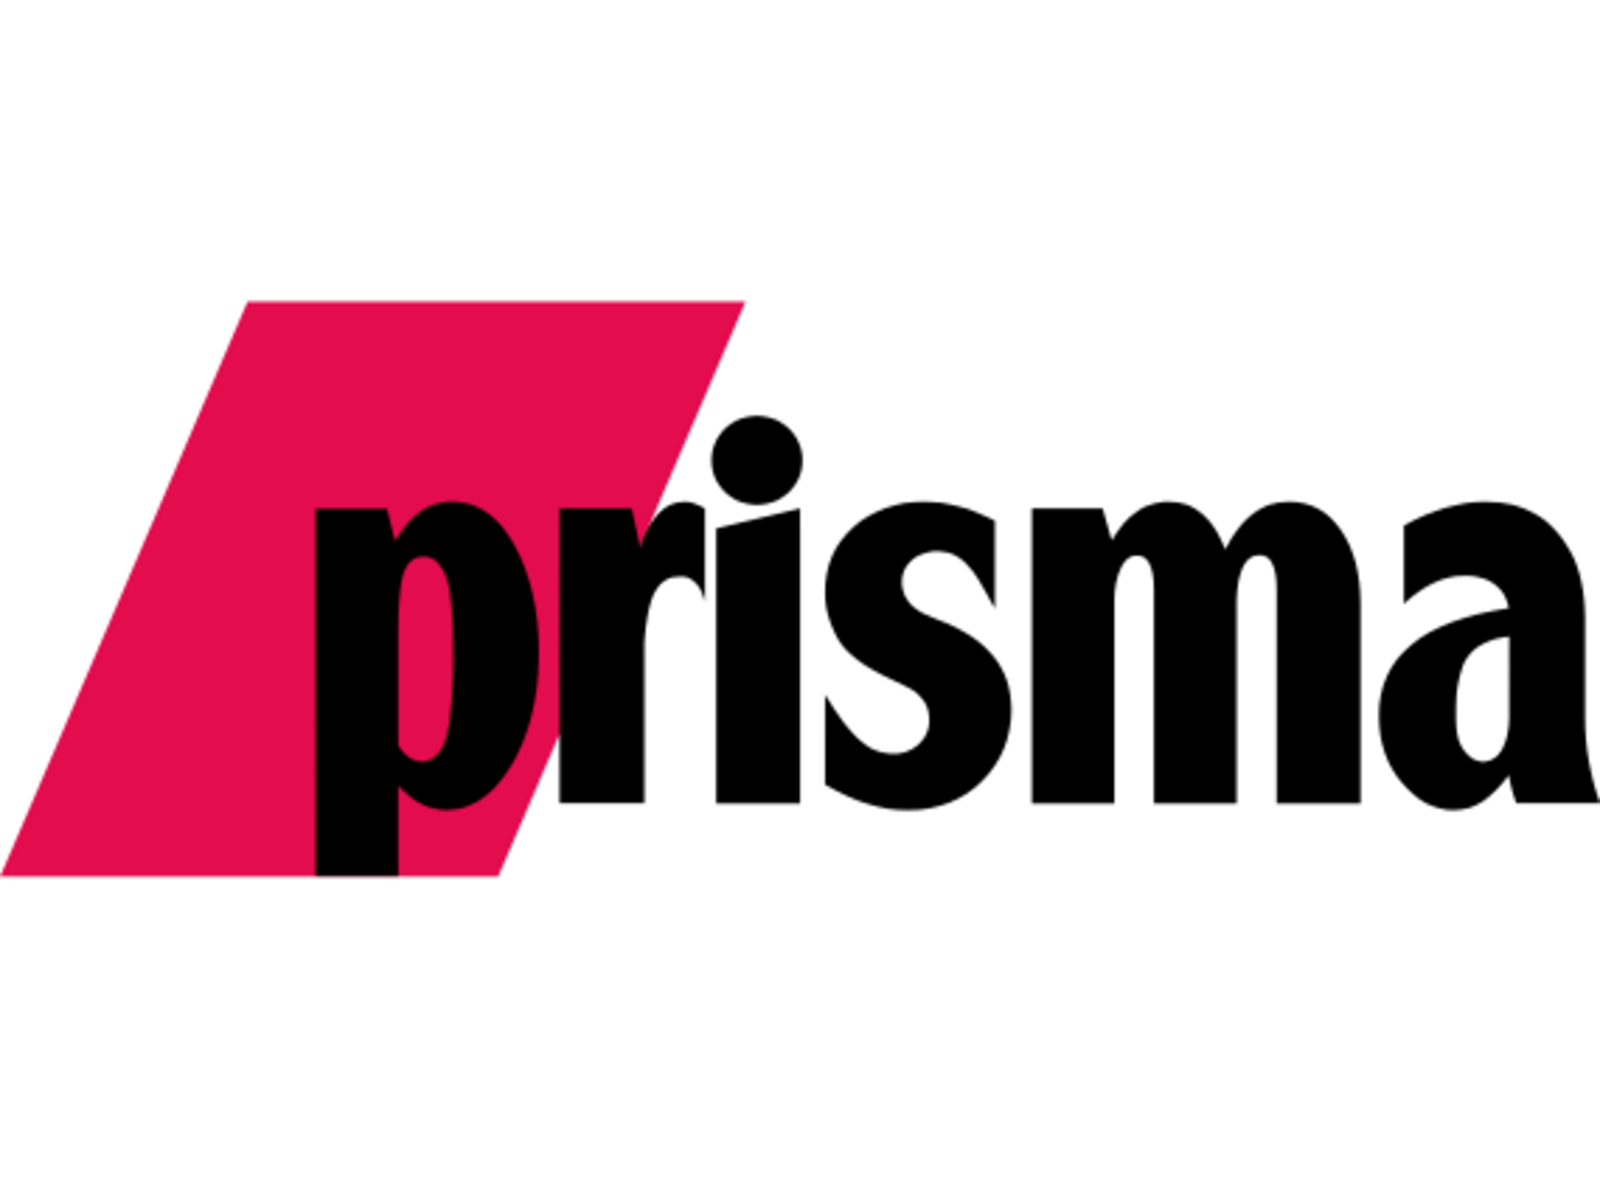 Beilage Prisma in 45 weiteren Tageszeitungen